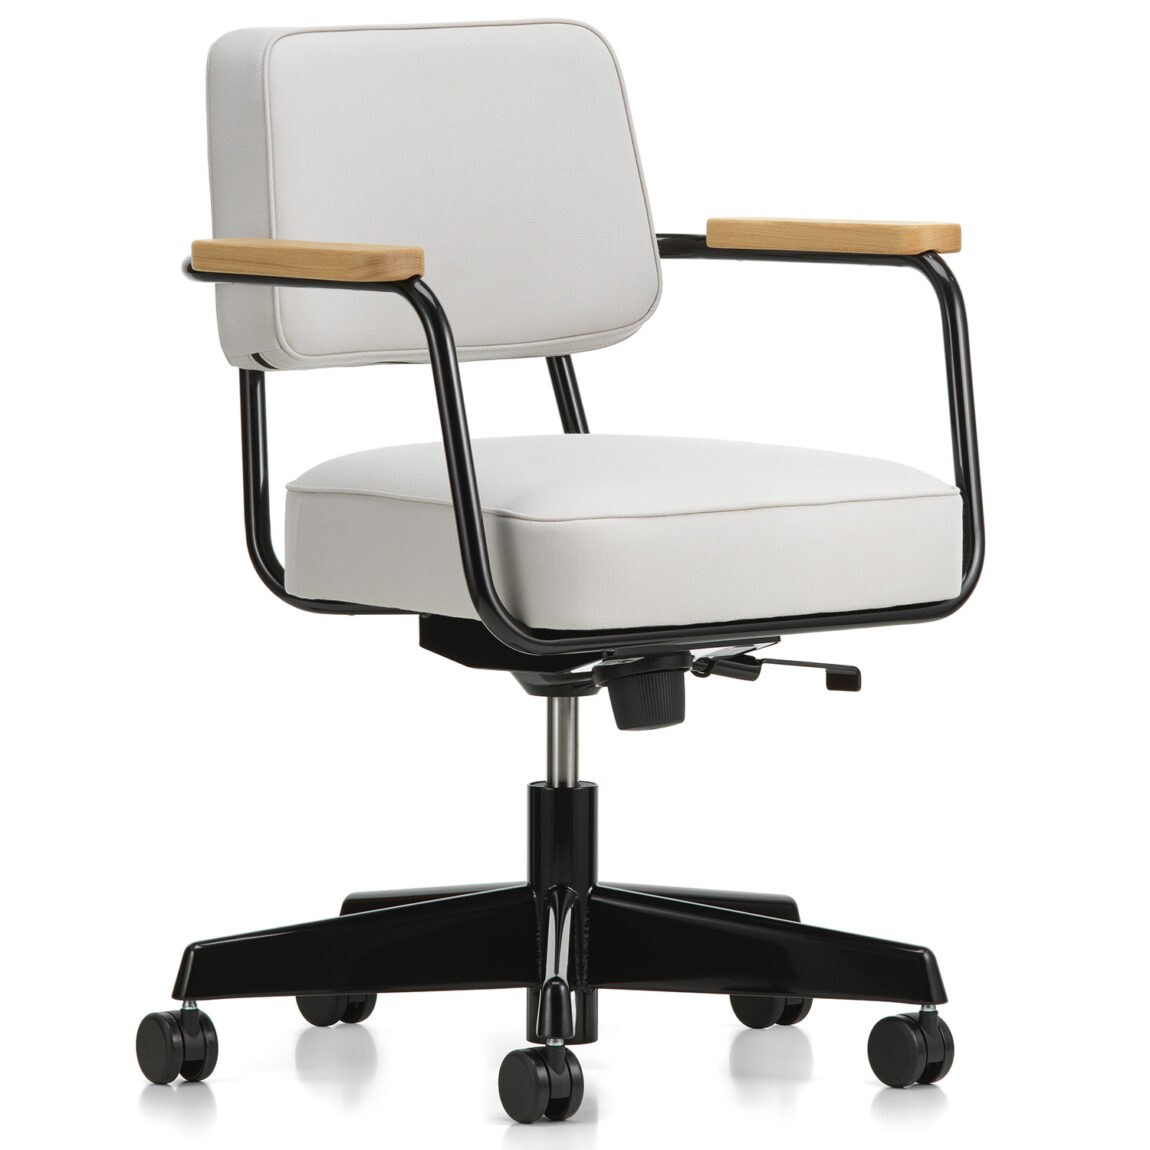 Vitra designové kancelářské židle Fauteuil